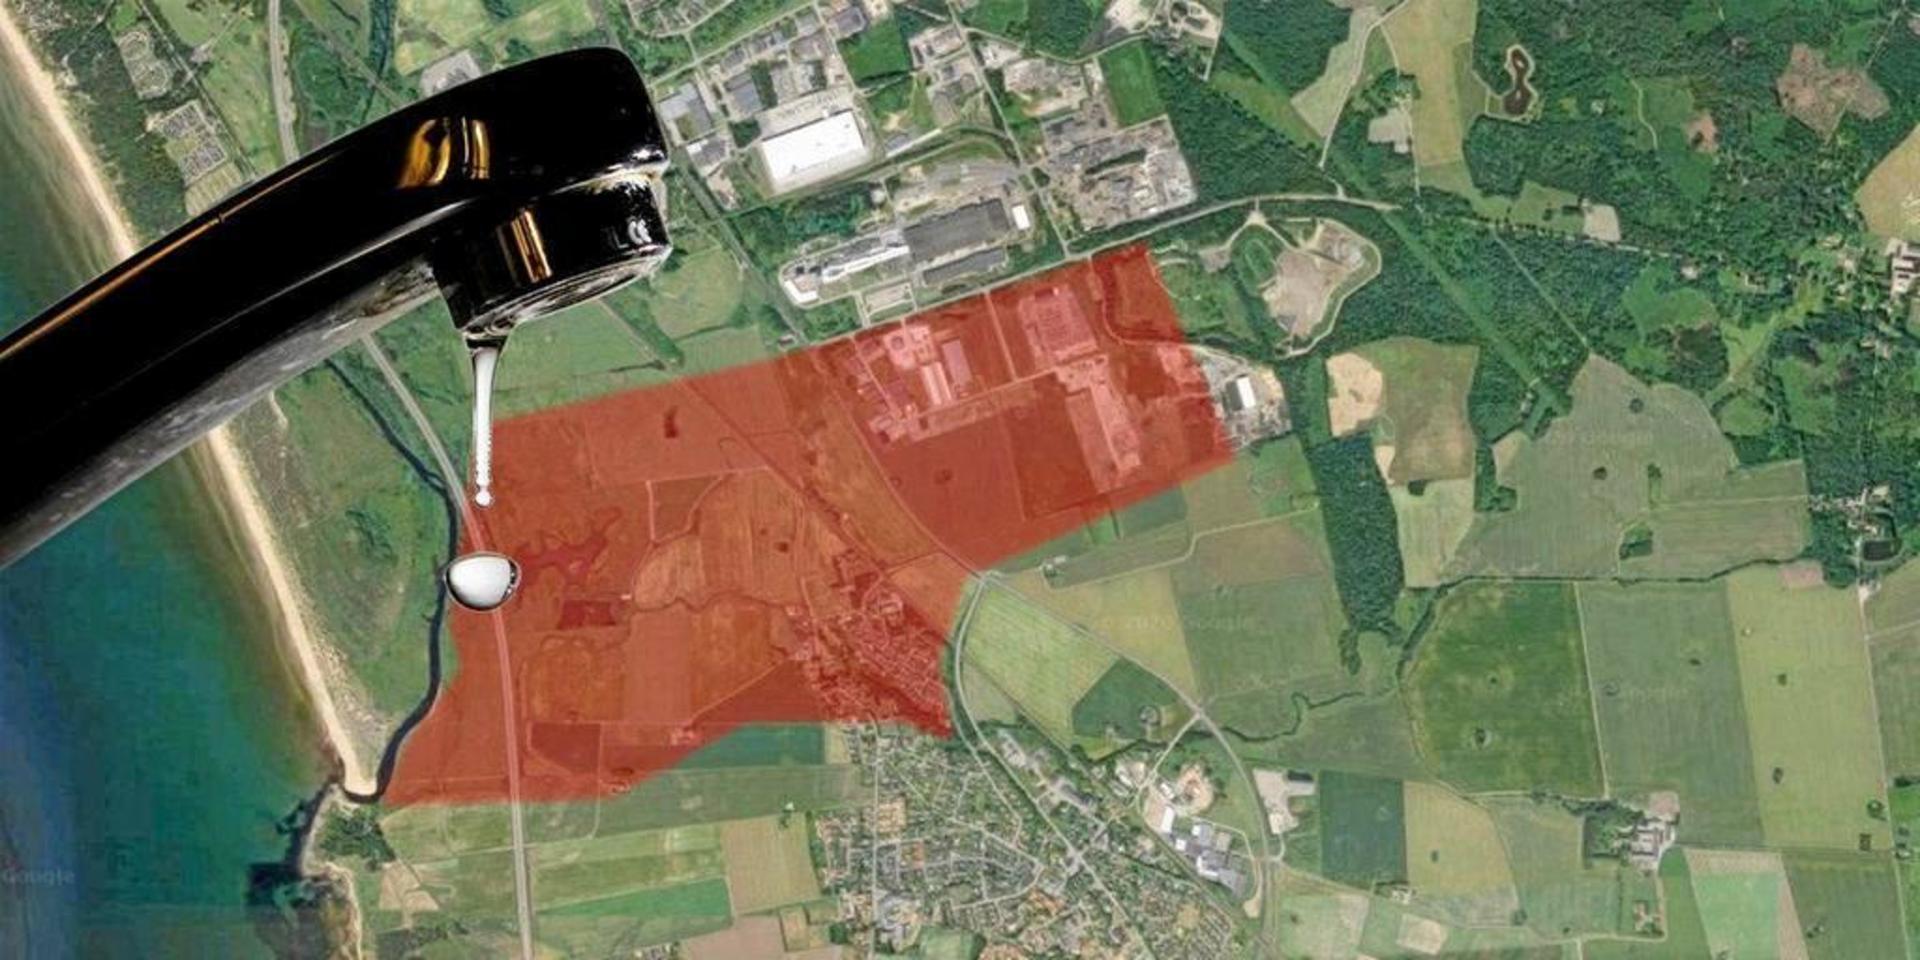 I september gick Halmstads kommun och länsstyrelsen i Halland ut med en varning om PFAS-föroreningar. Ett område sydväst om Kistinge industriområde misstänktes vara påverkat av ämnena och boende avråddes från att använda egna brunnar.